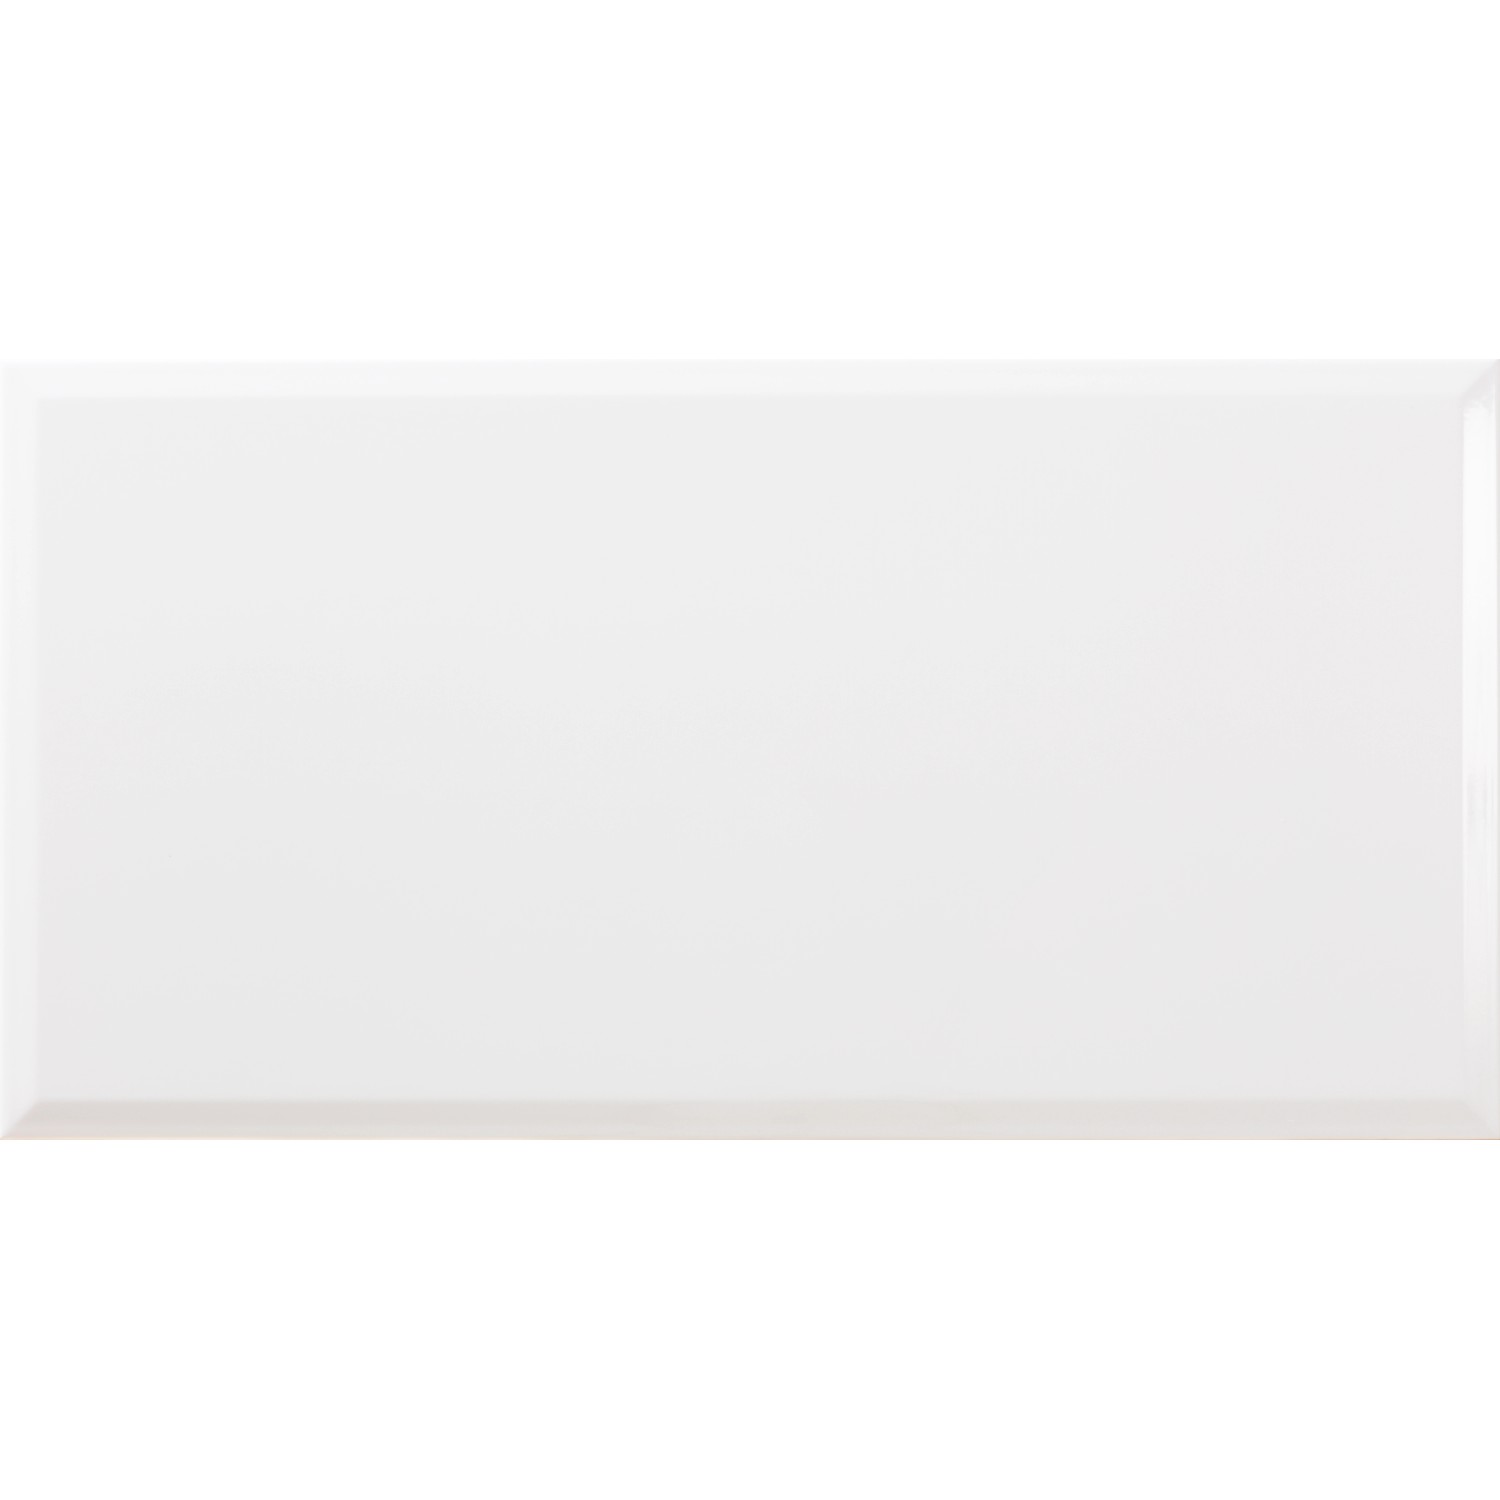 Wandfliese Metro Facette 31,6 x 60 cm, Stärke 7 mm, Abr. 2, weiß, glasiert glänzend